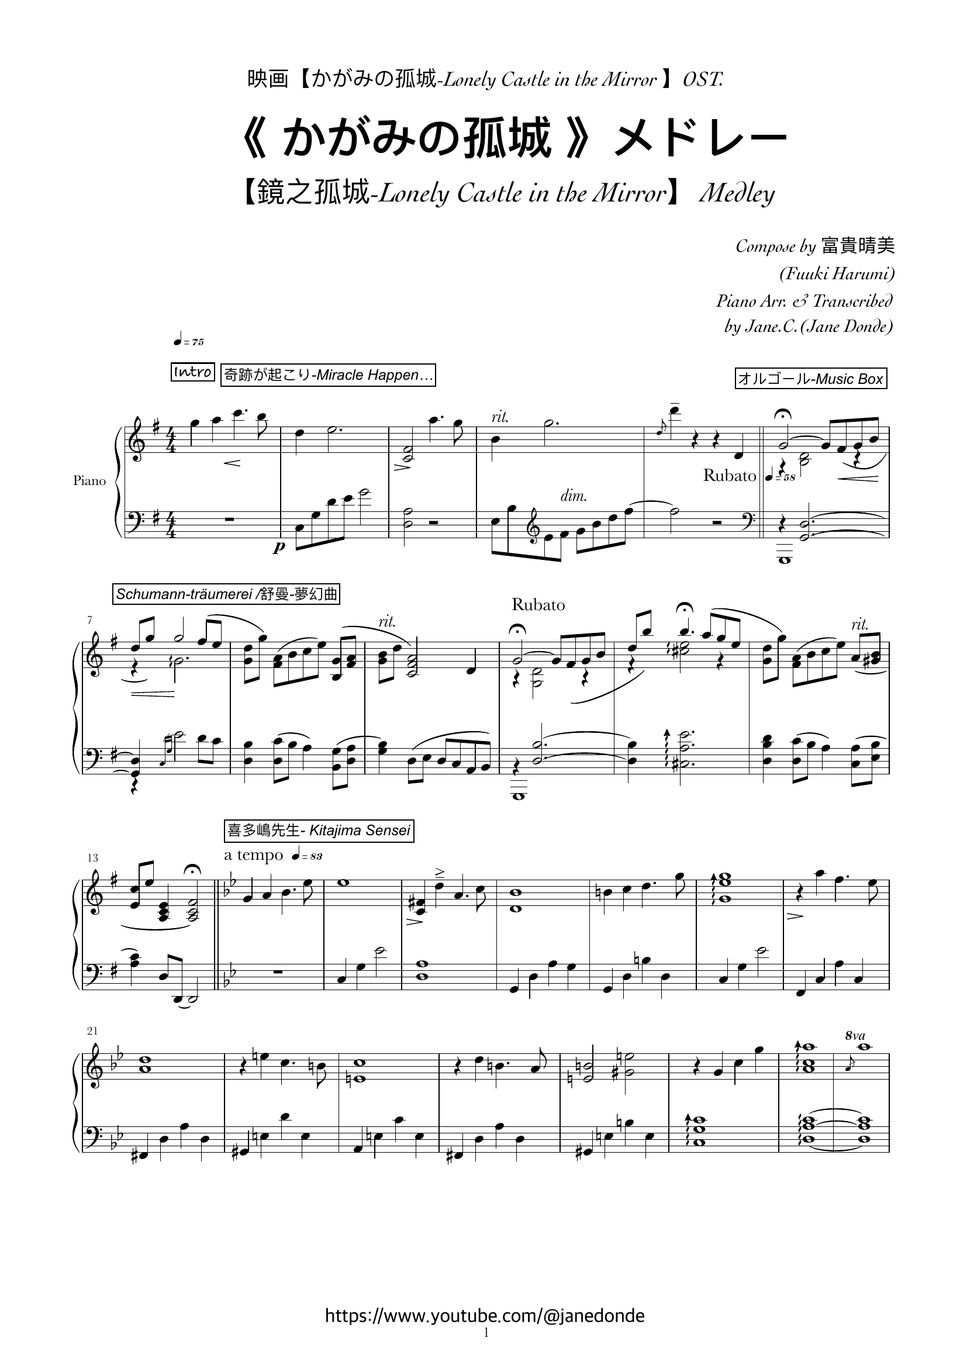 富貴晴美(Fuuki Harumi)、Schumann、Debussy - 《かがみの孤城》メドレー/【鏡之孤城-Lonely Castle in the Mirror 】Medley by Jane.C.(Jane Donde)